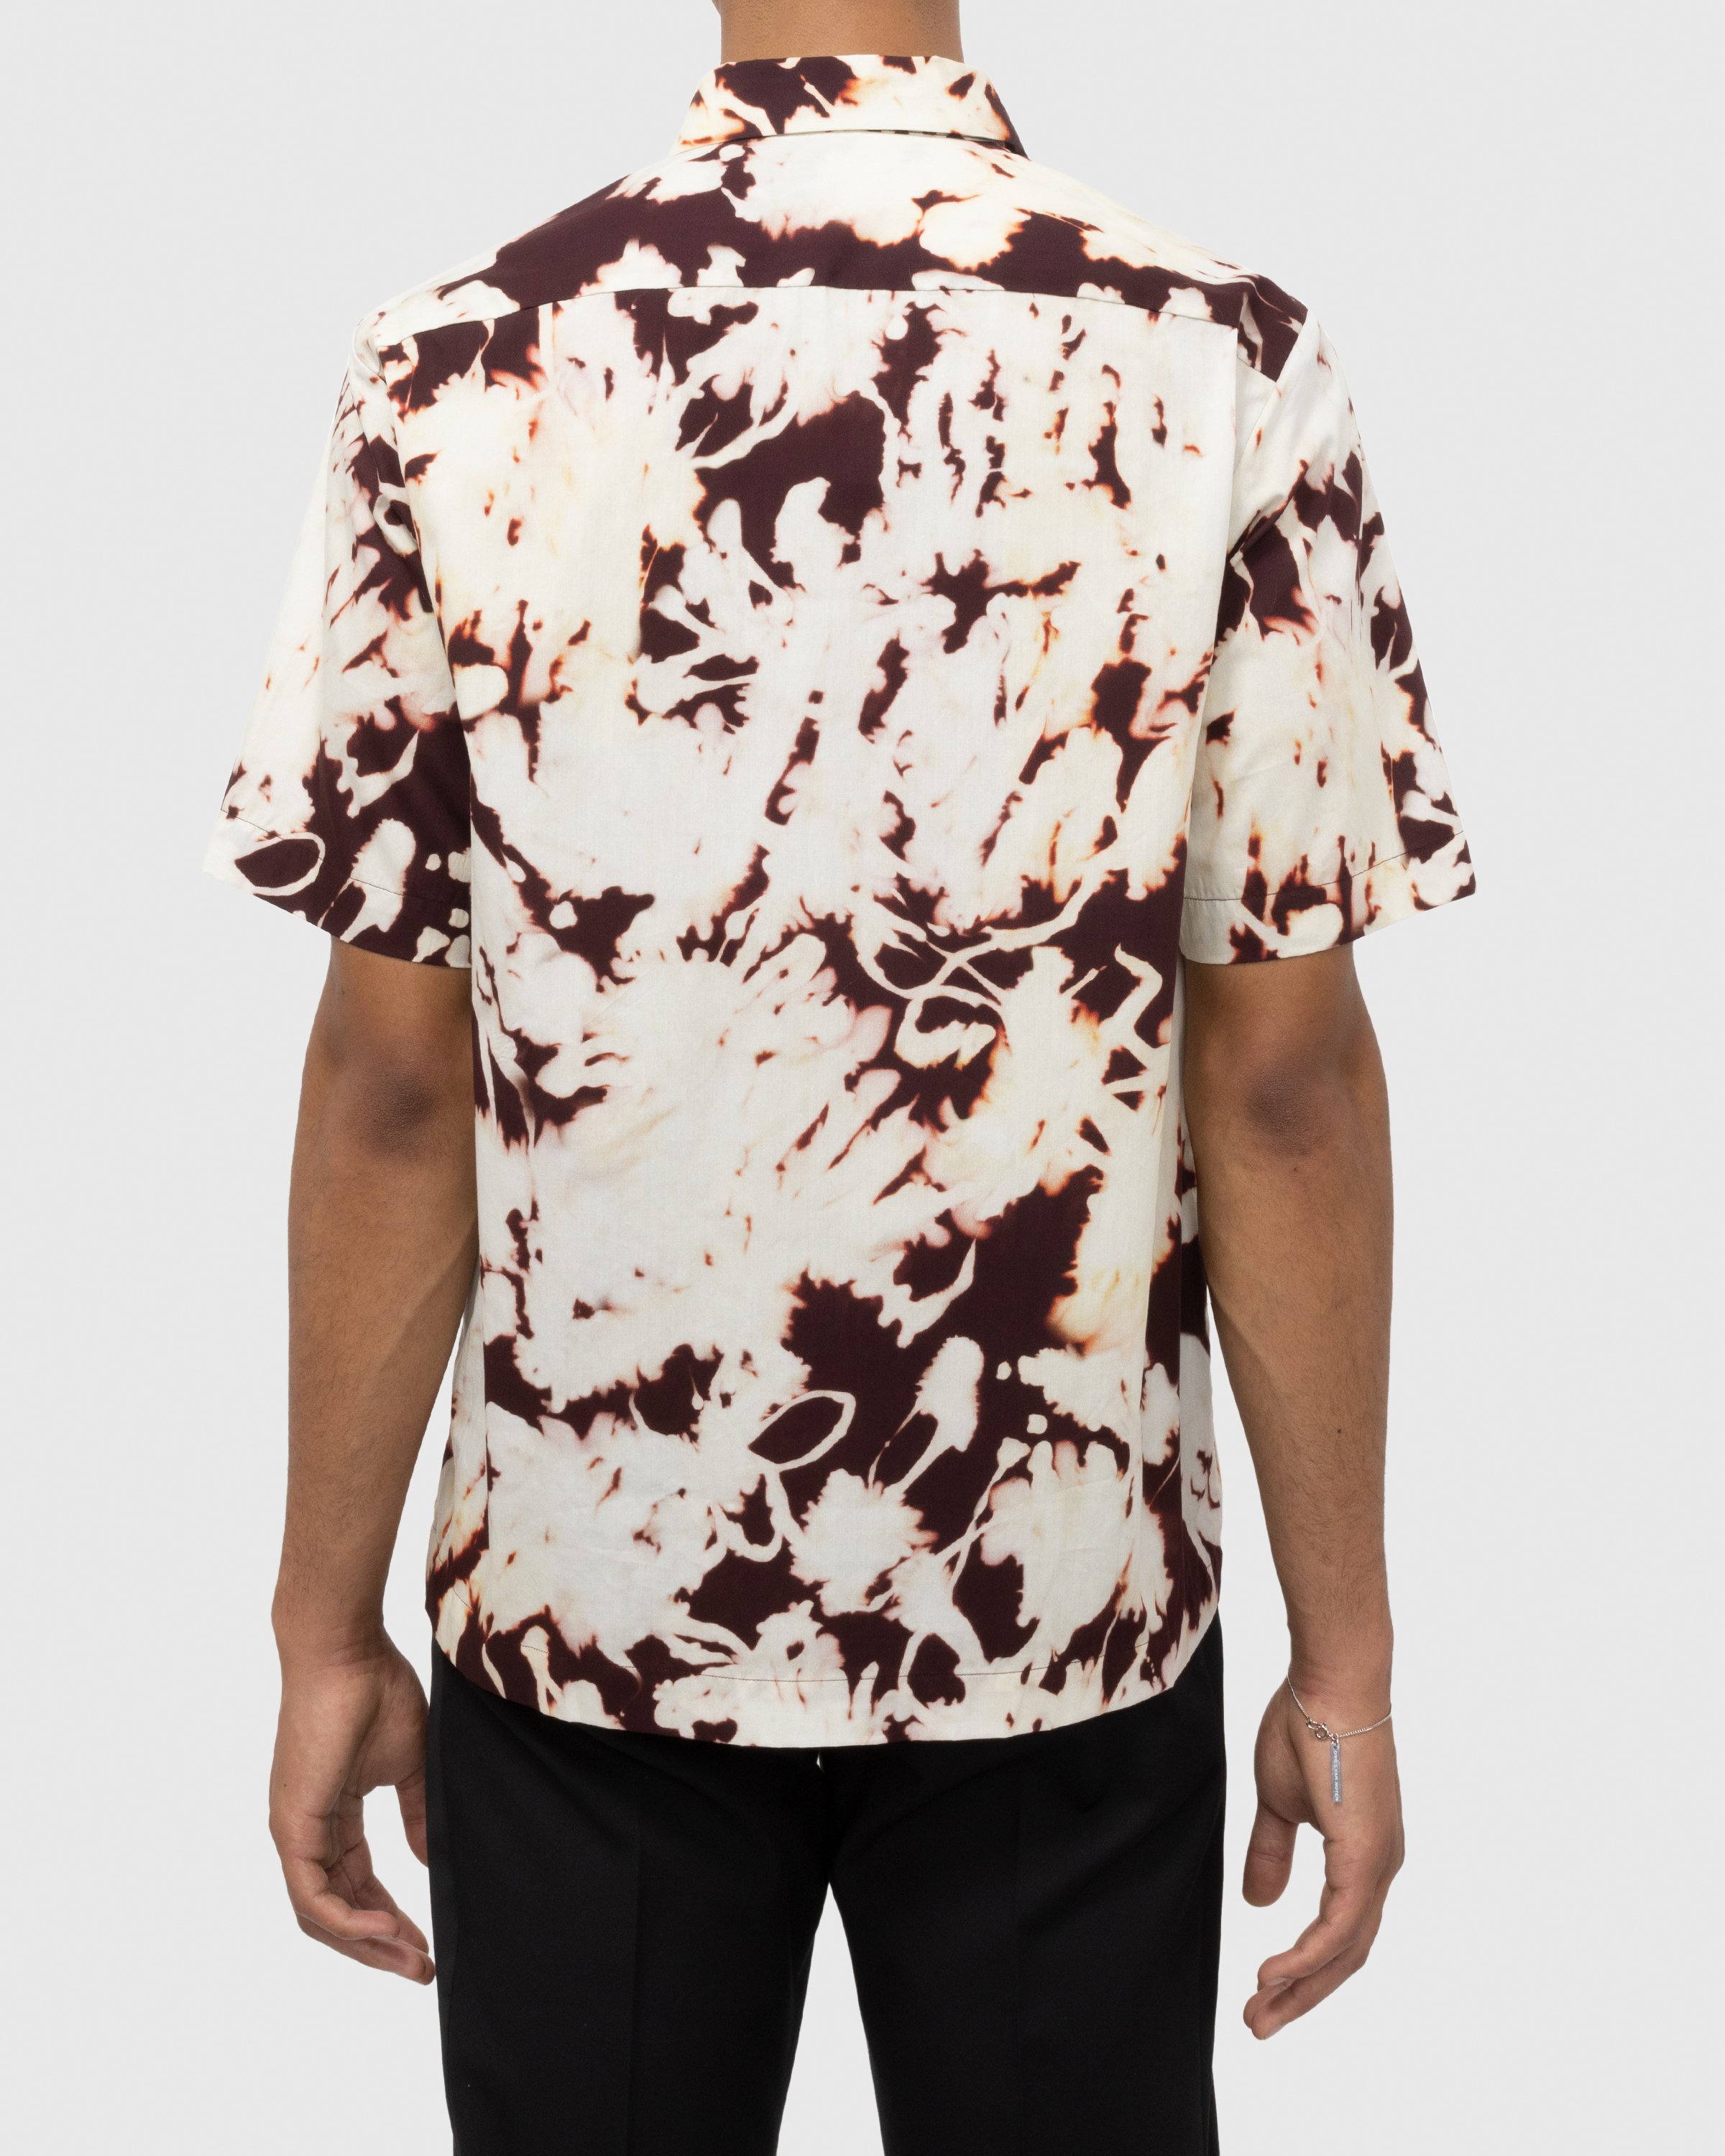 Dries van Noten – Clasen Shirt Multi | Highsnobiety Shop